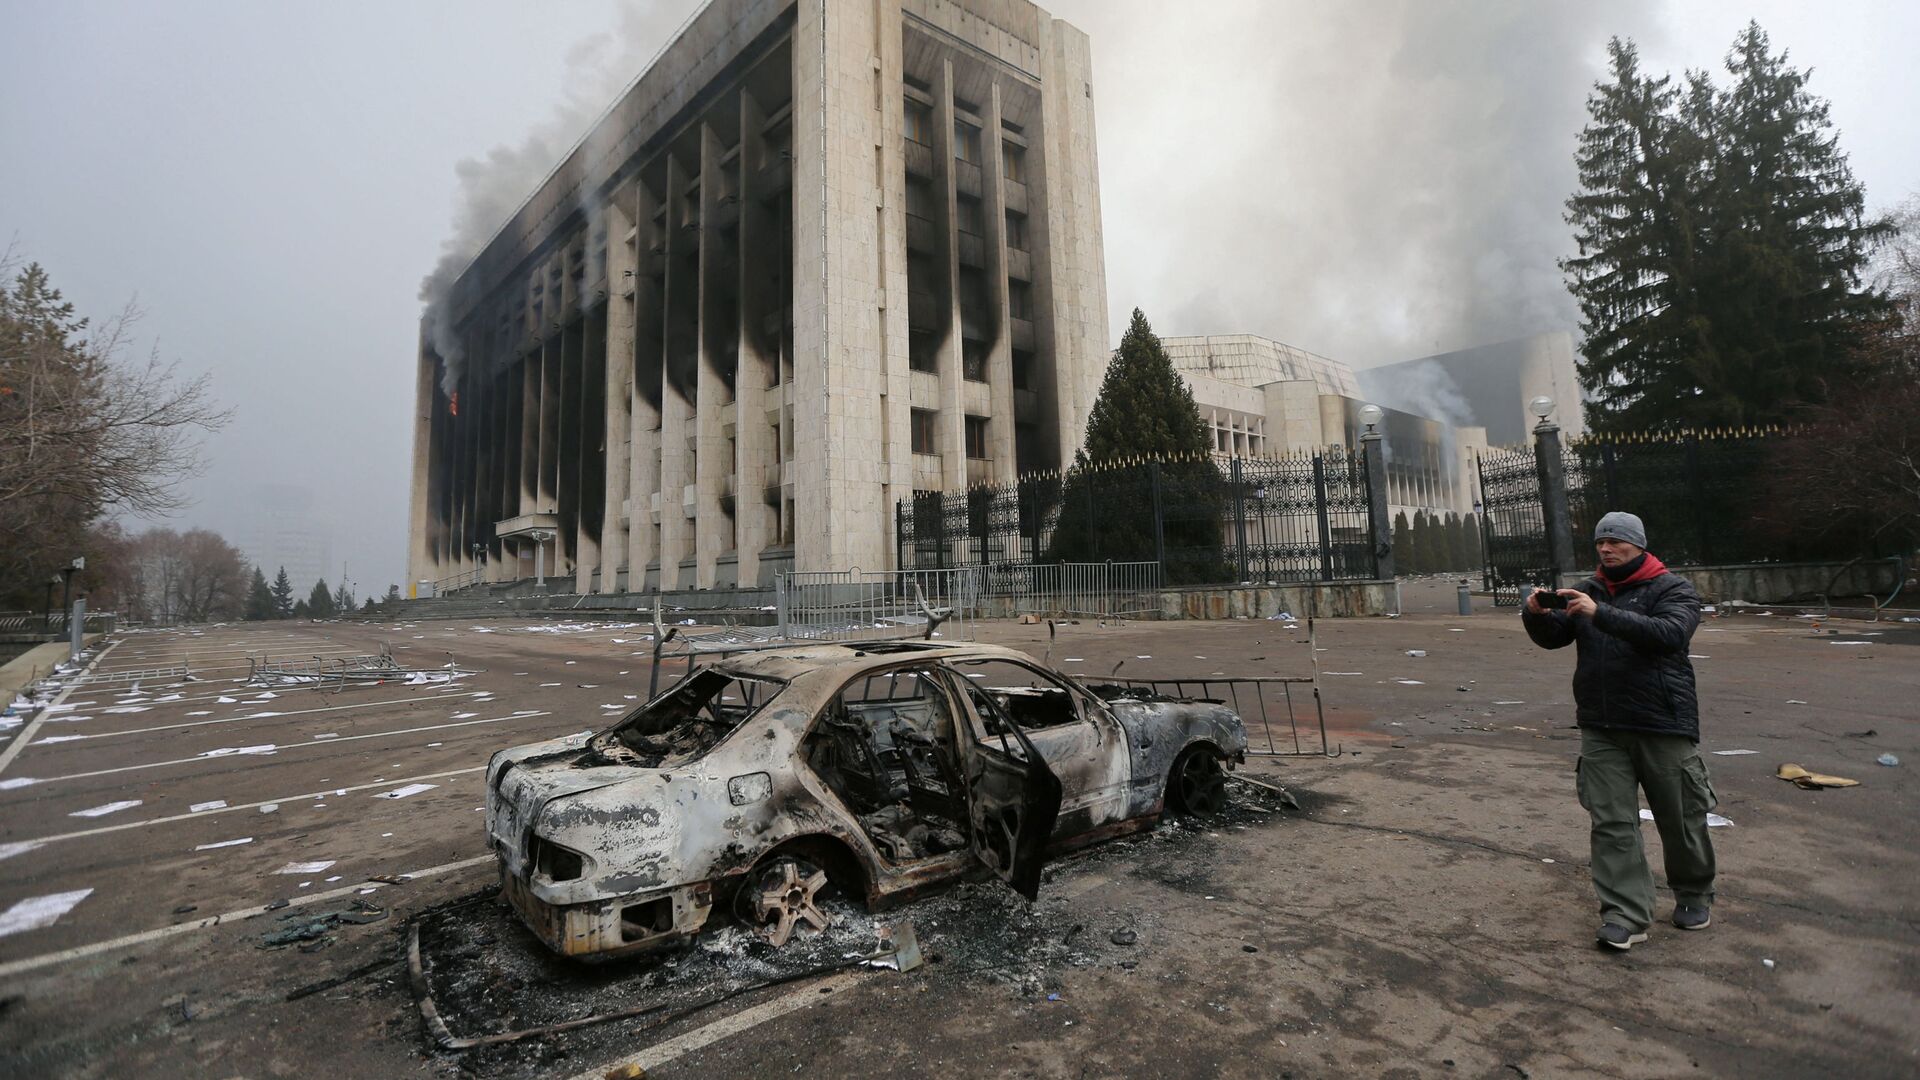 Сгоревший автомобиль перед зданием мэрии, которое было подожжено во время протестов в Алматы - Sputnik Таджикистан, 1920, 10.01.2022